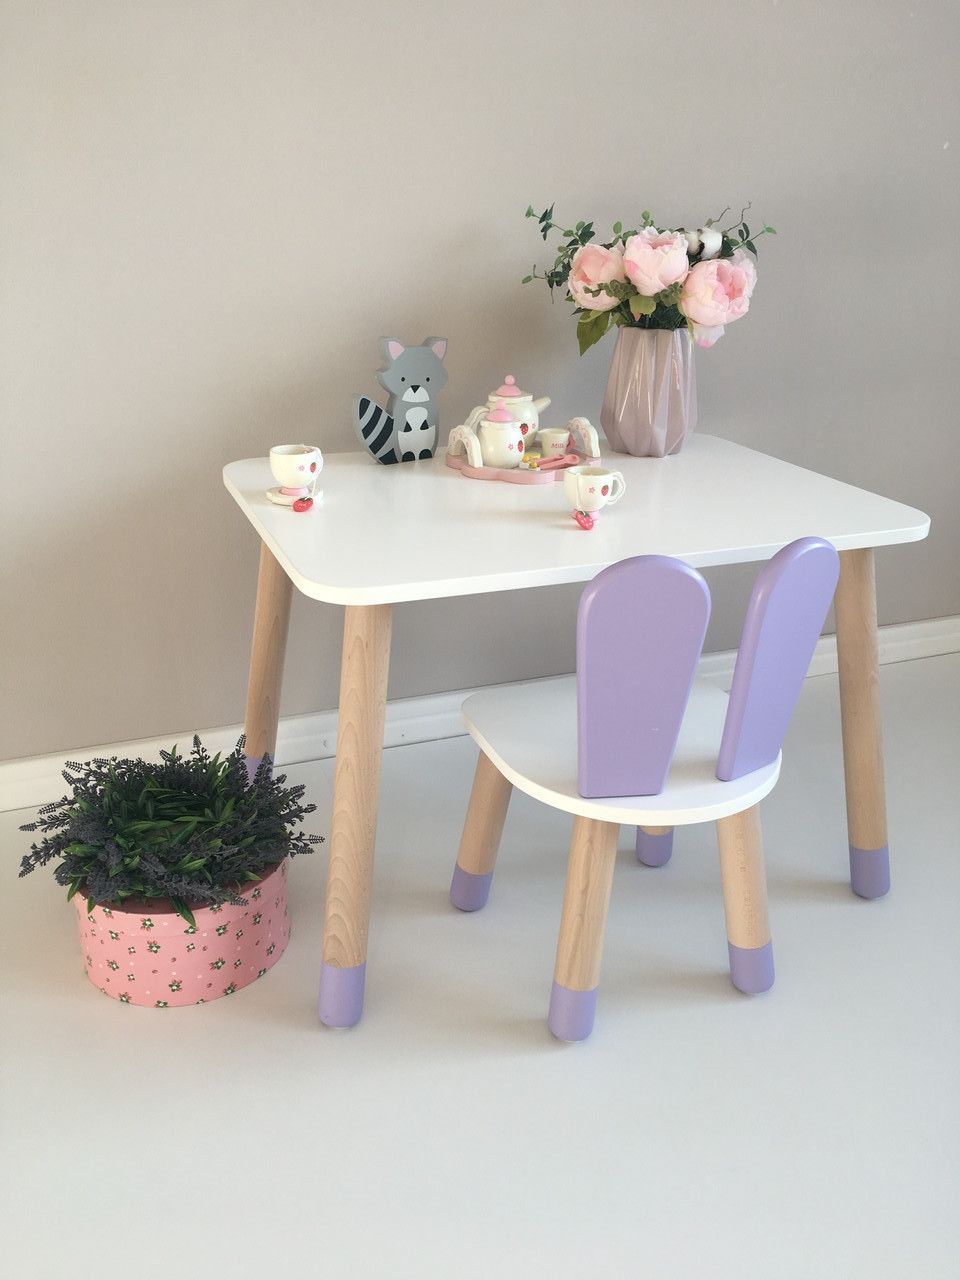 Дитячий стіл і 1 стілець (дерев'яний стільчик зайчик зайчик і прямокутний столик)